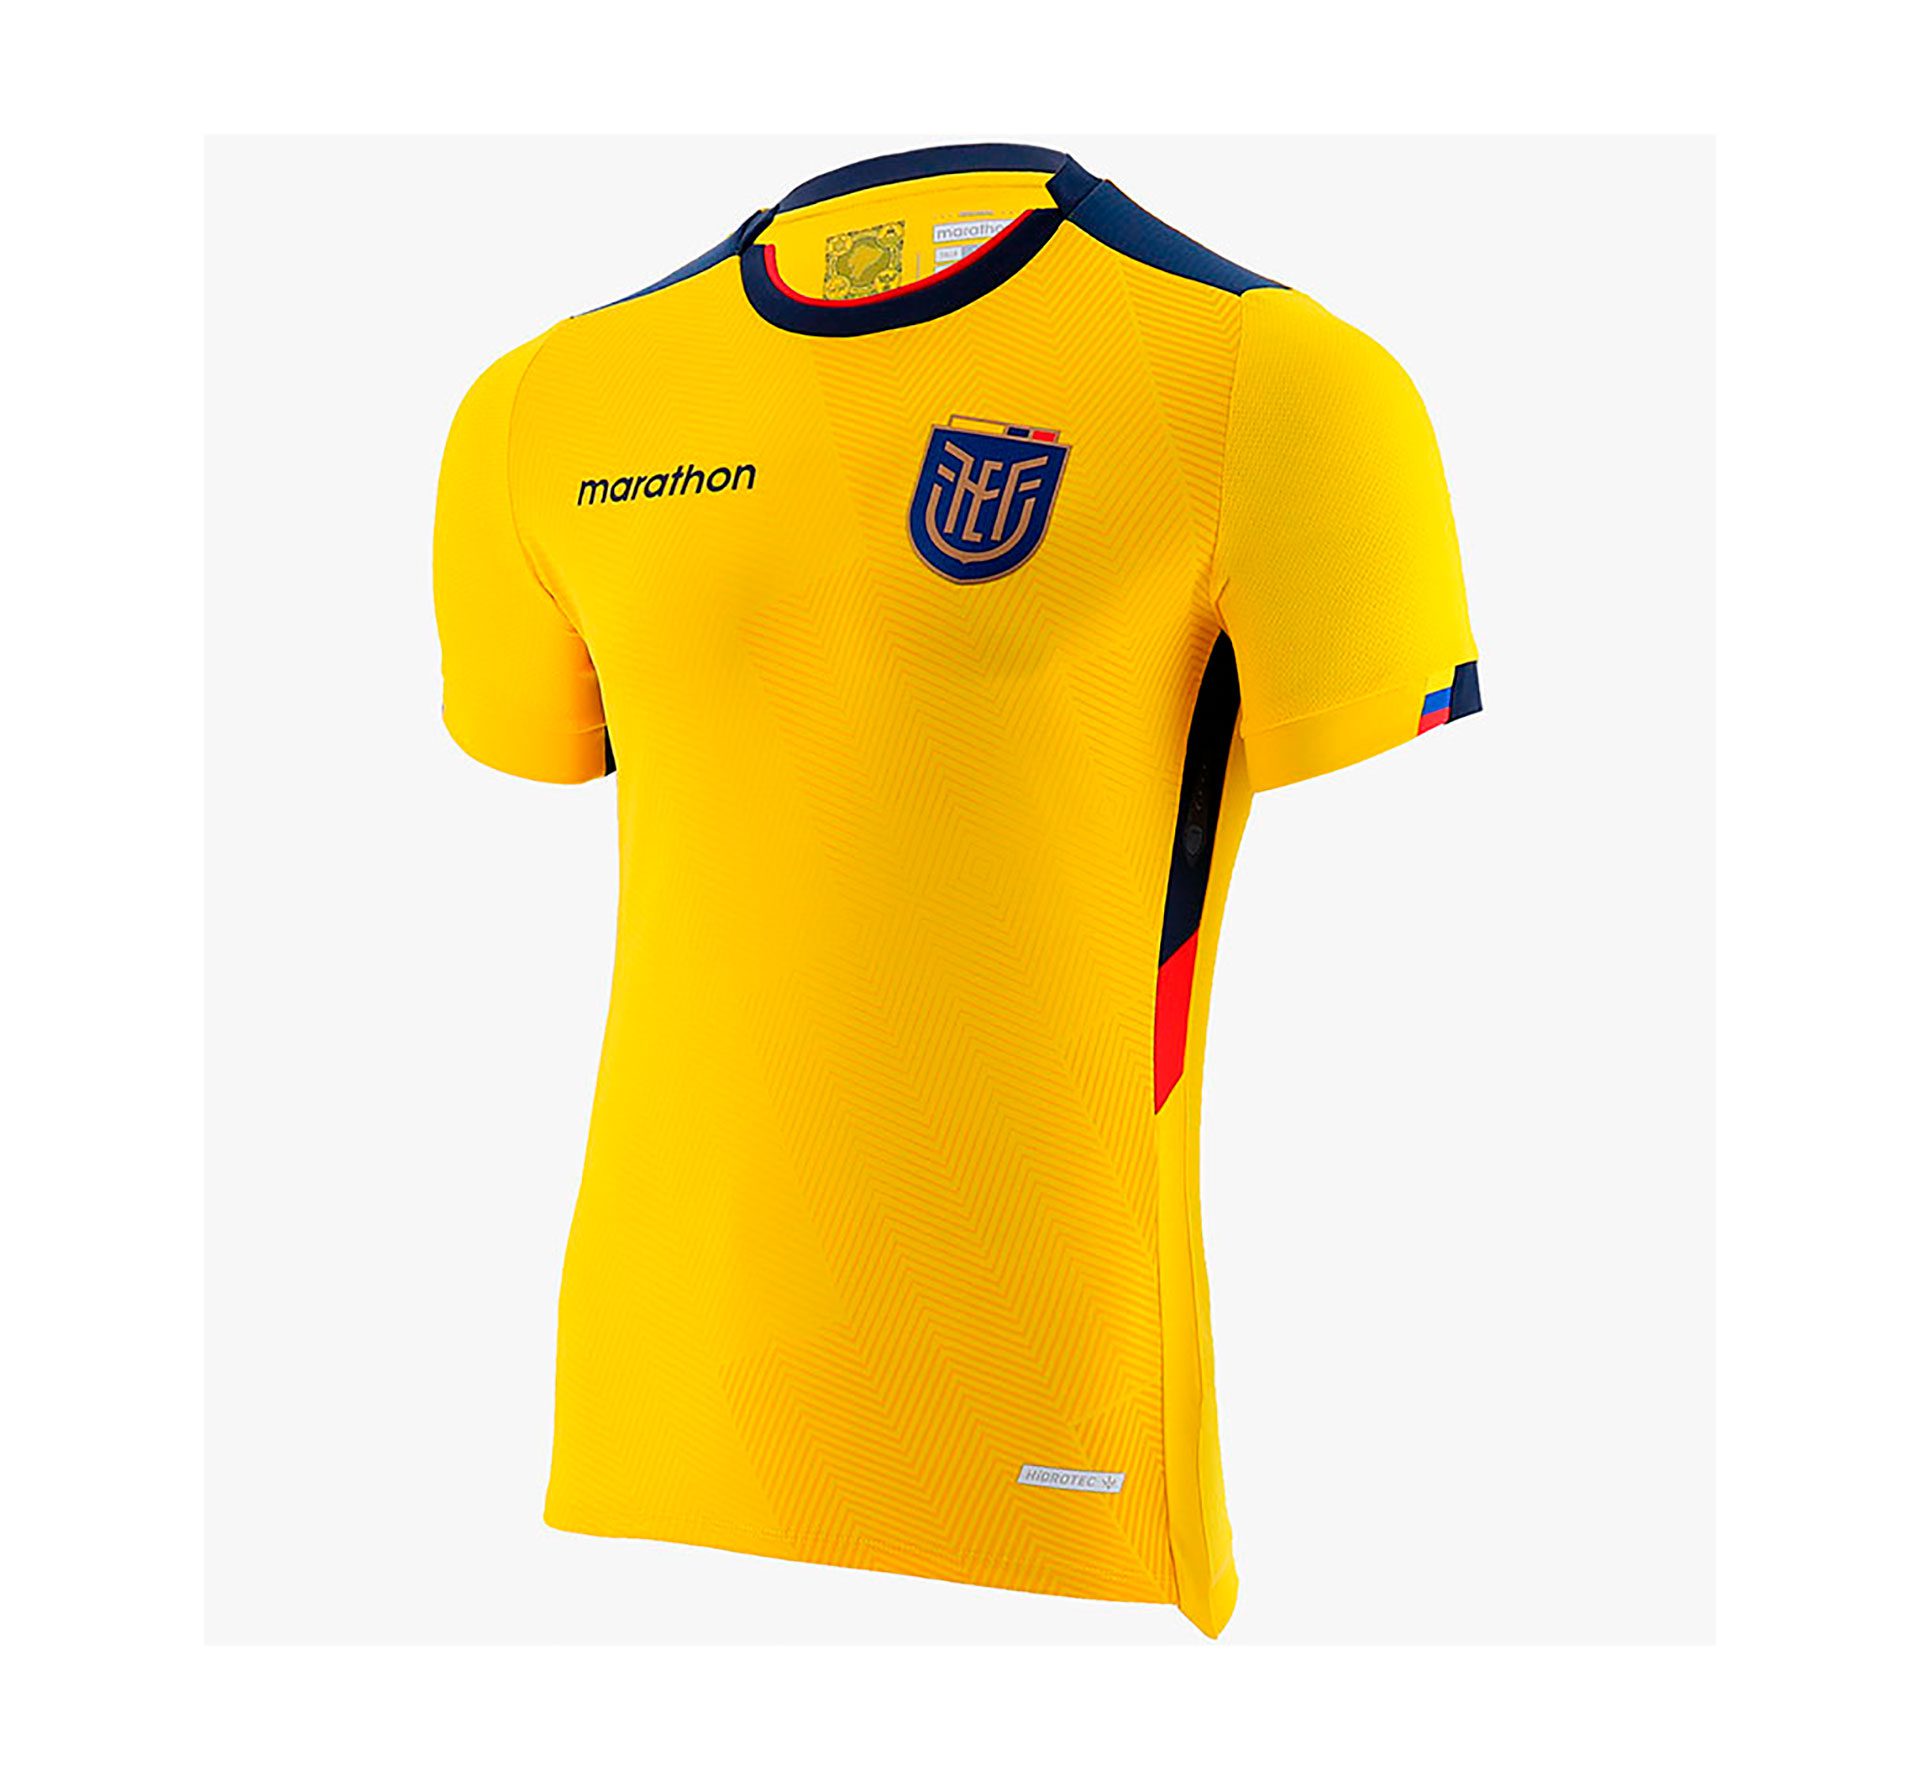 Ecuador national team shirt